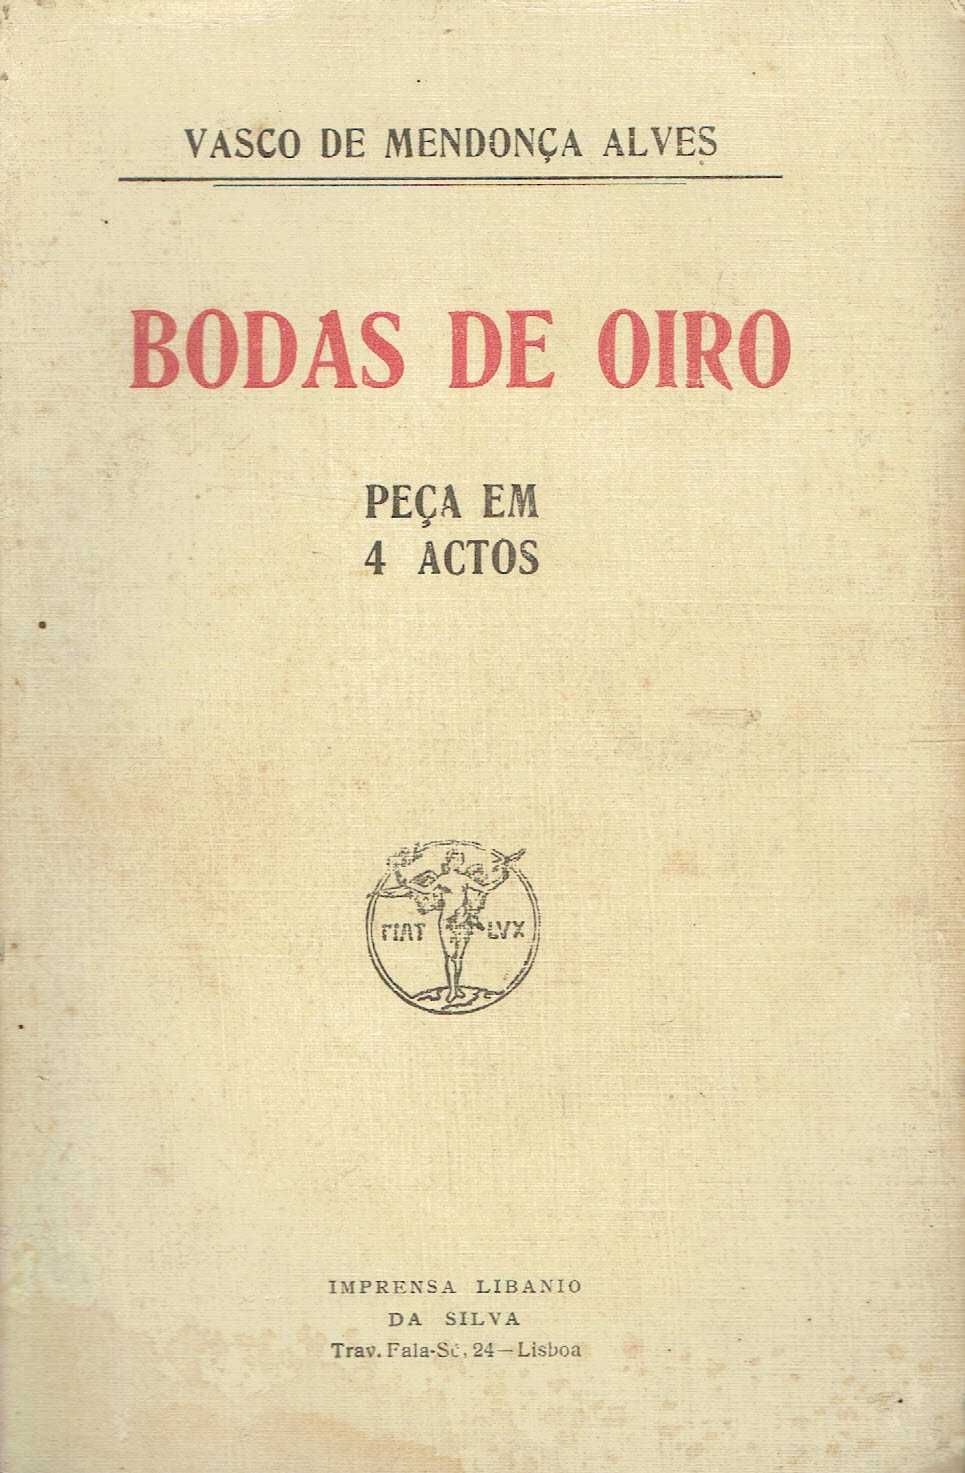 14639

Bodas de oiro : peça em 4 actos 
de Vasco de Mendonça Alves